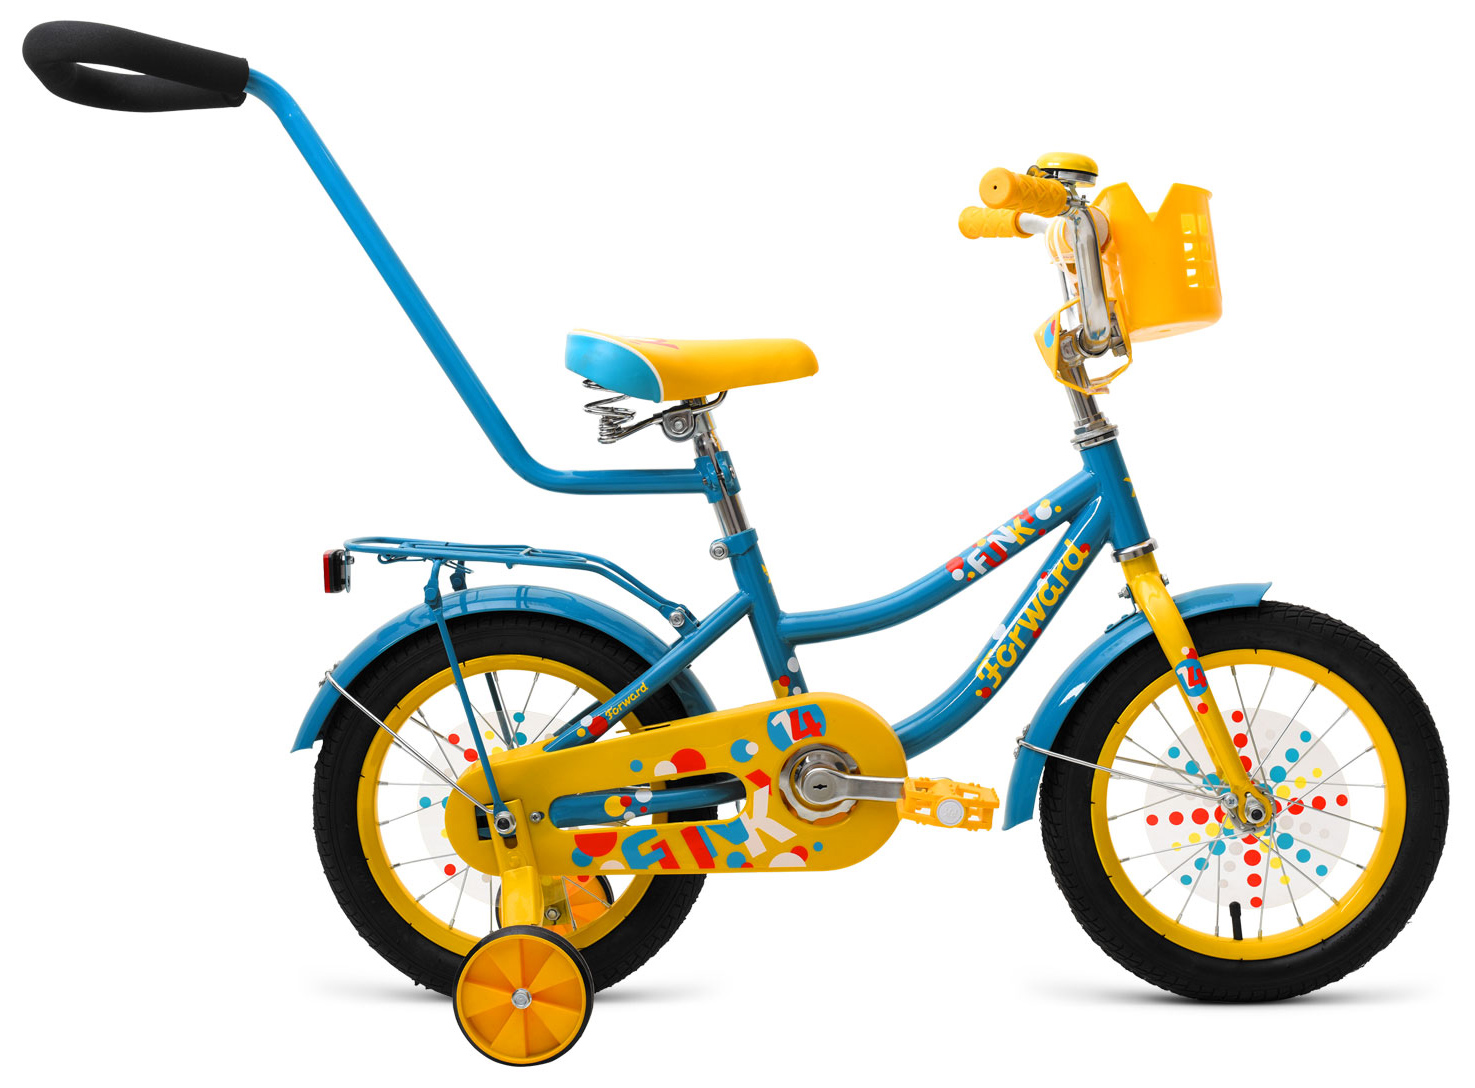  Отзывы о Трехколесный детский велосипед Forward Funky 14 2019